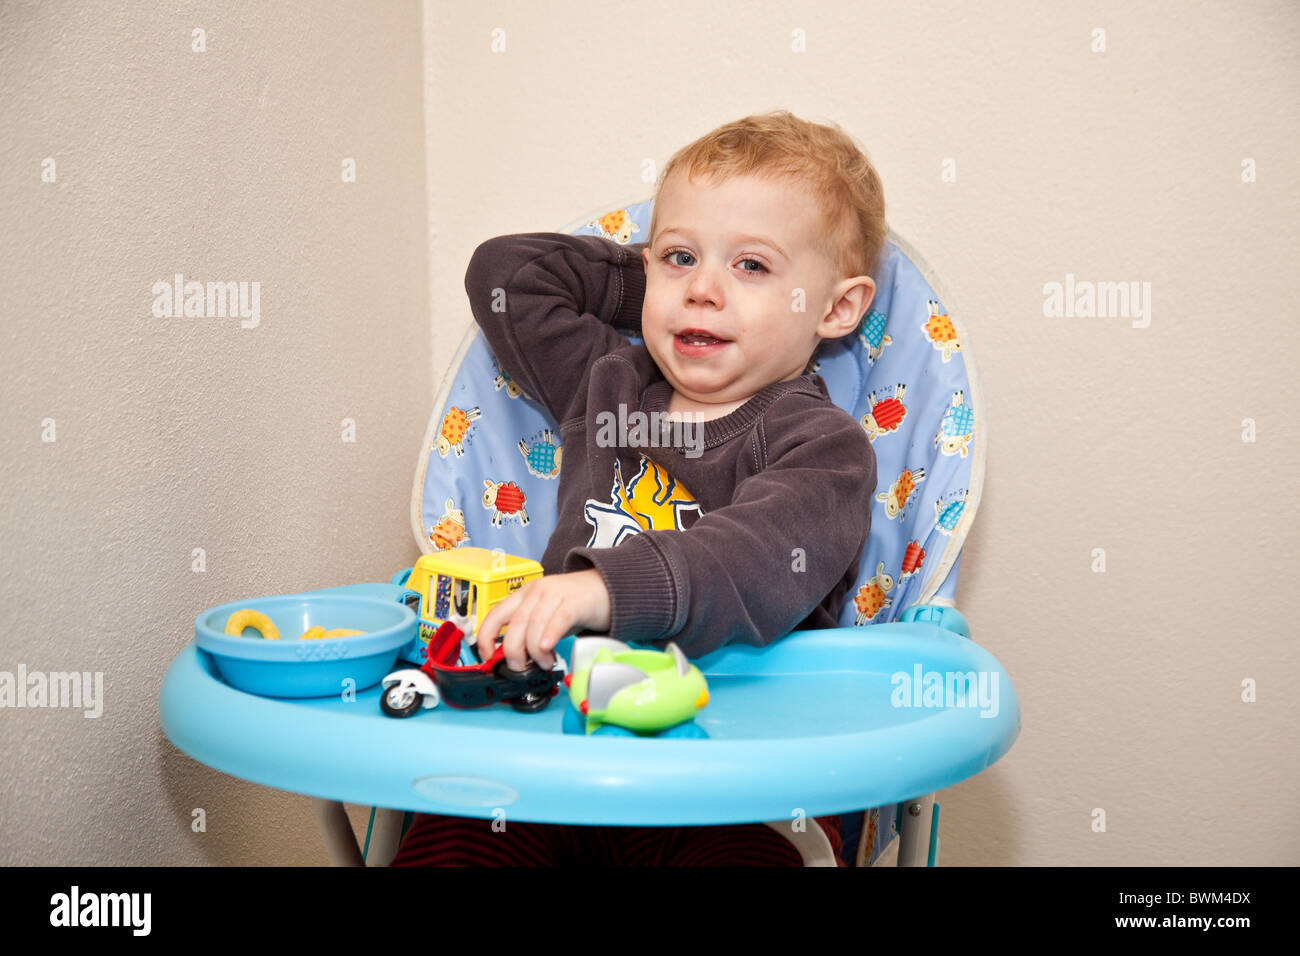 One Year Old Baby Boy Sitting In A High Chair Devon England